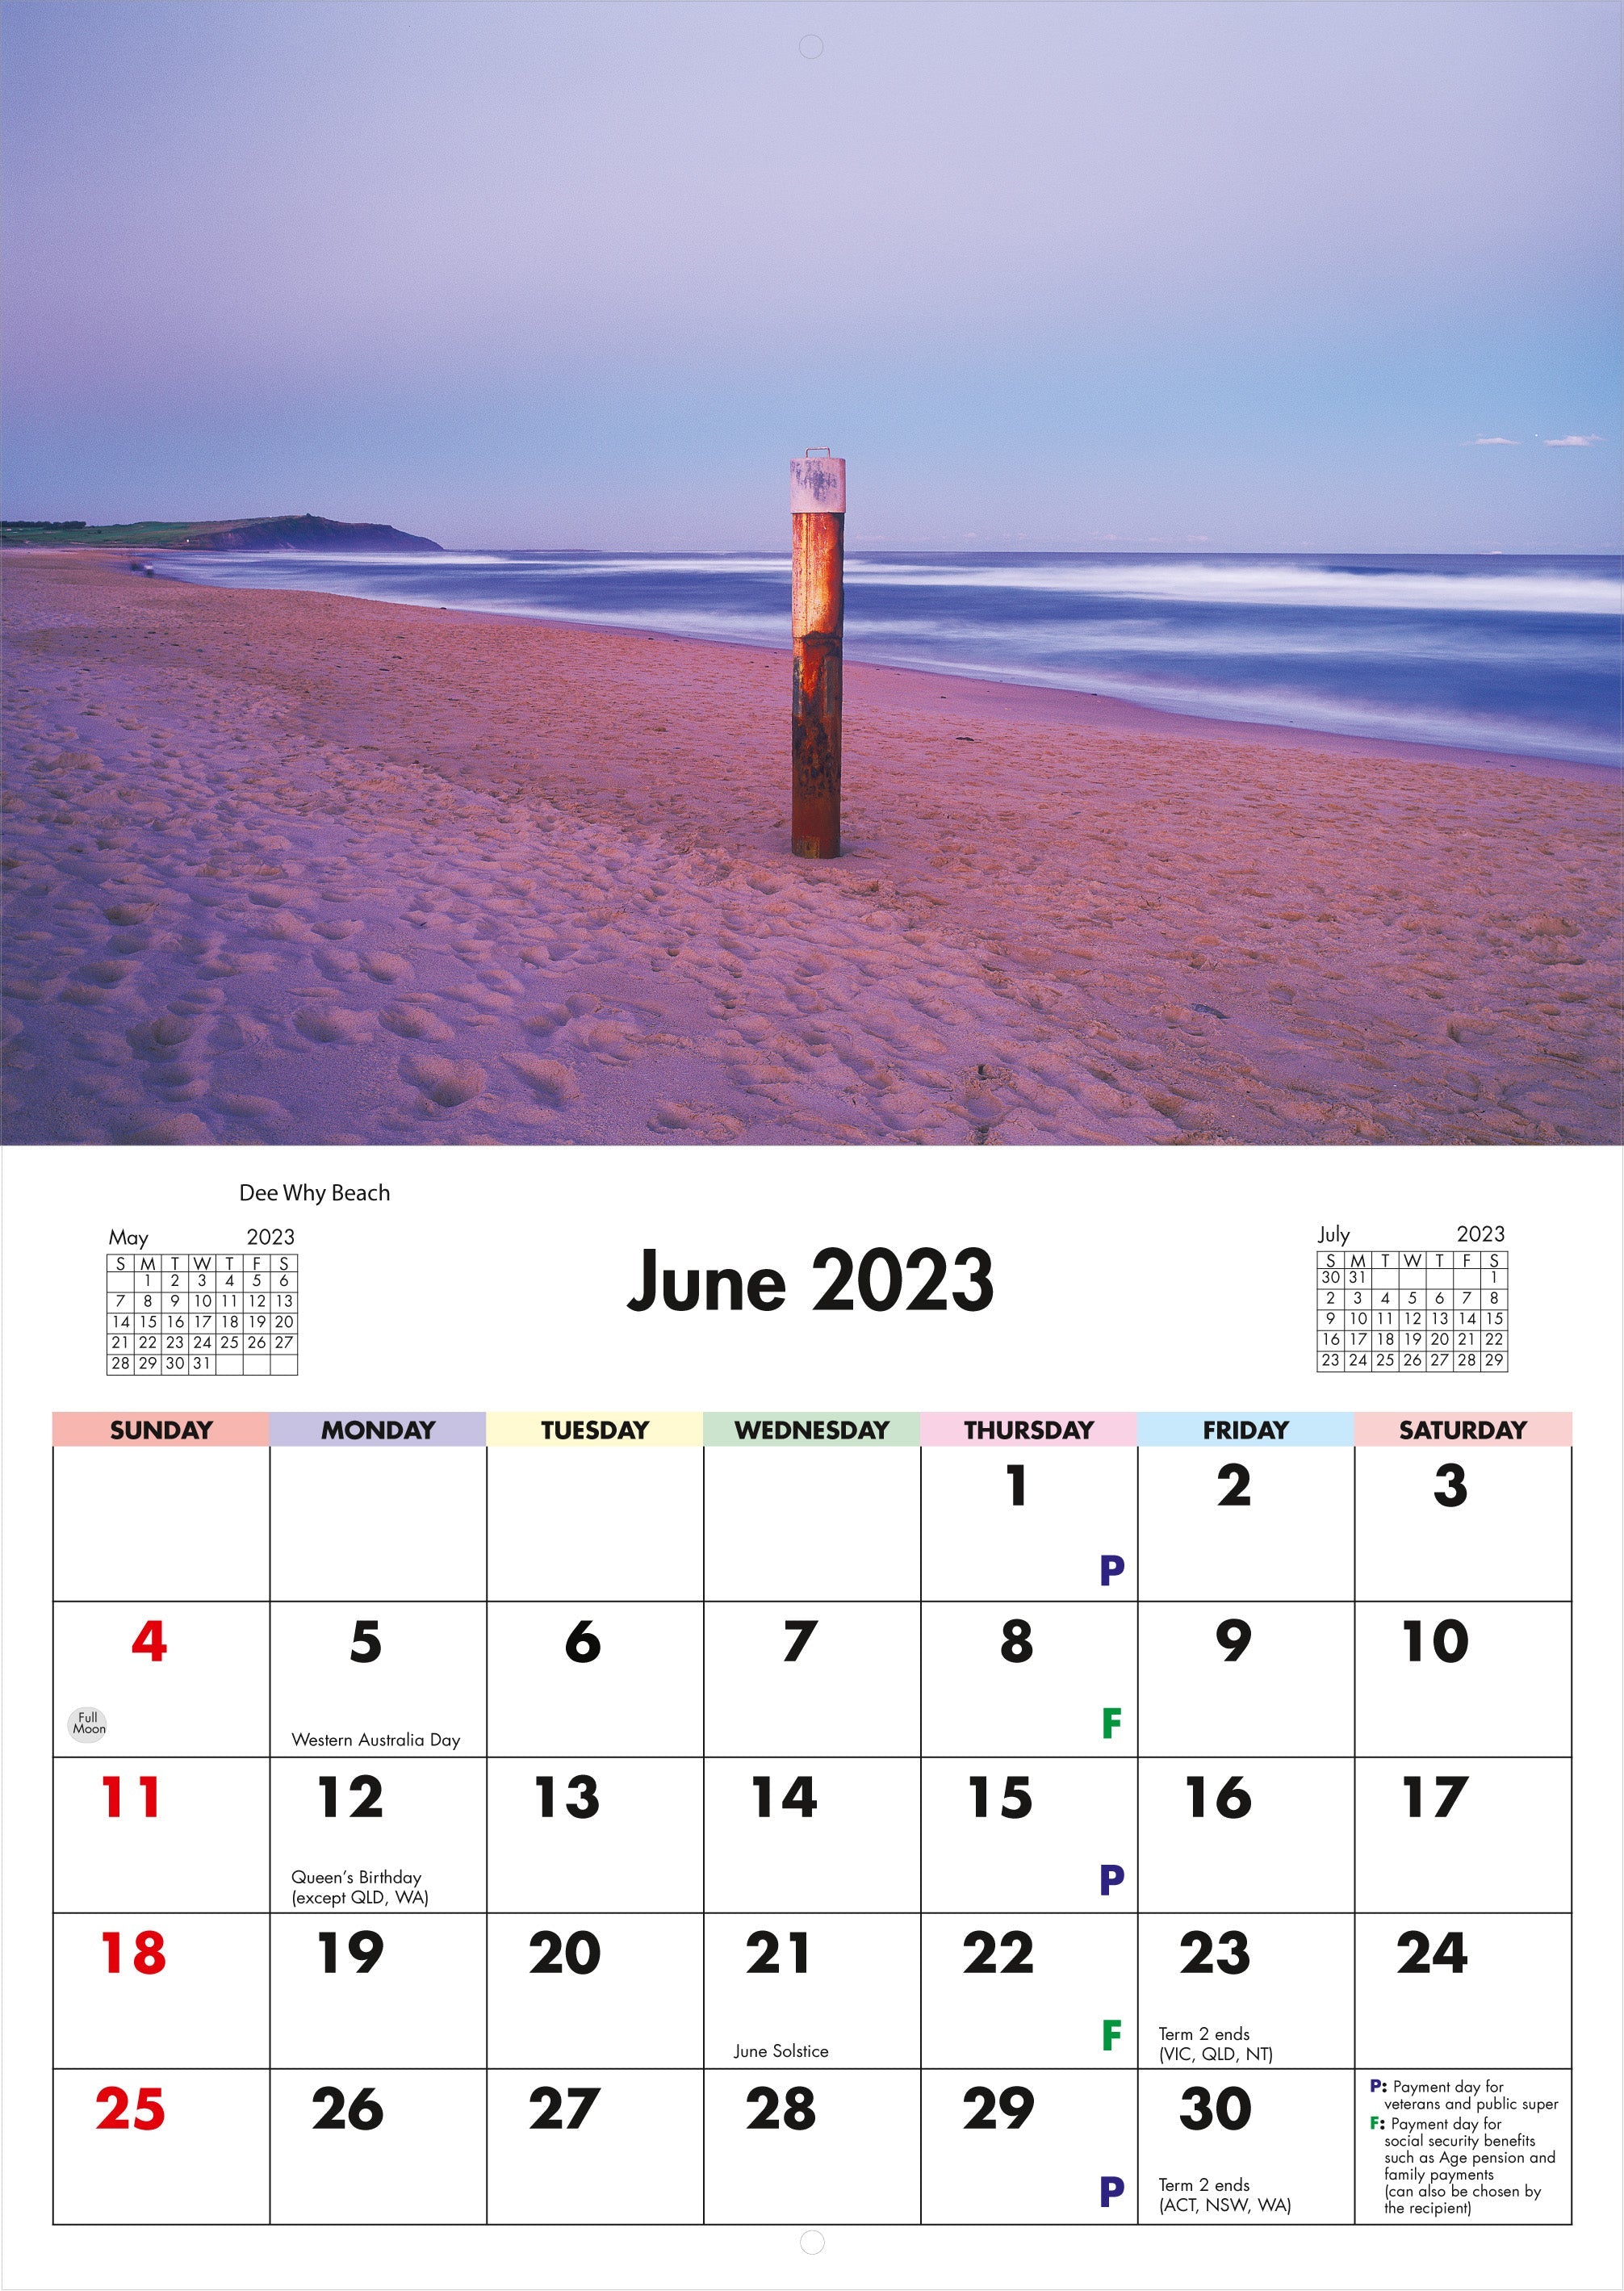 2023 Sydney Beaches - Horizontal Wall Calendar